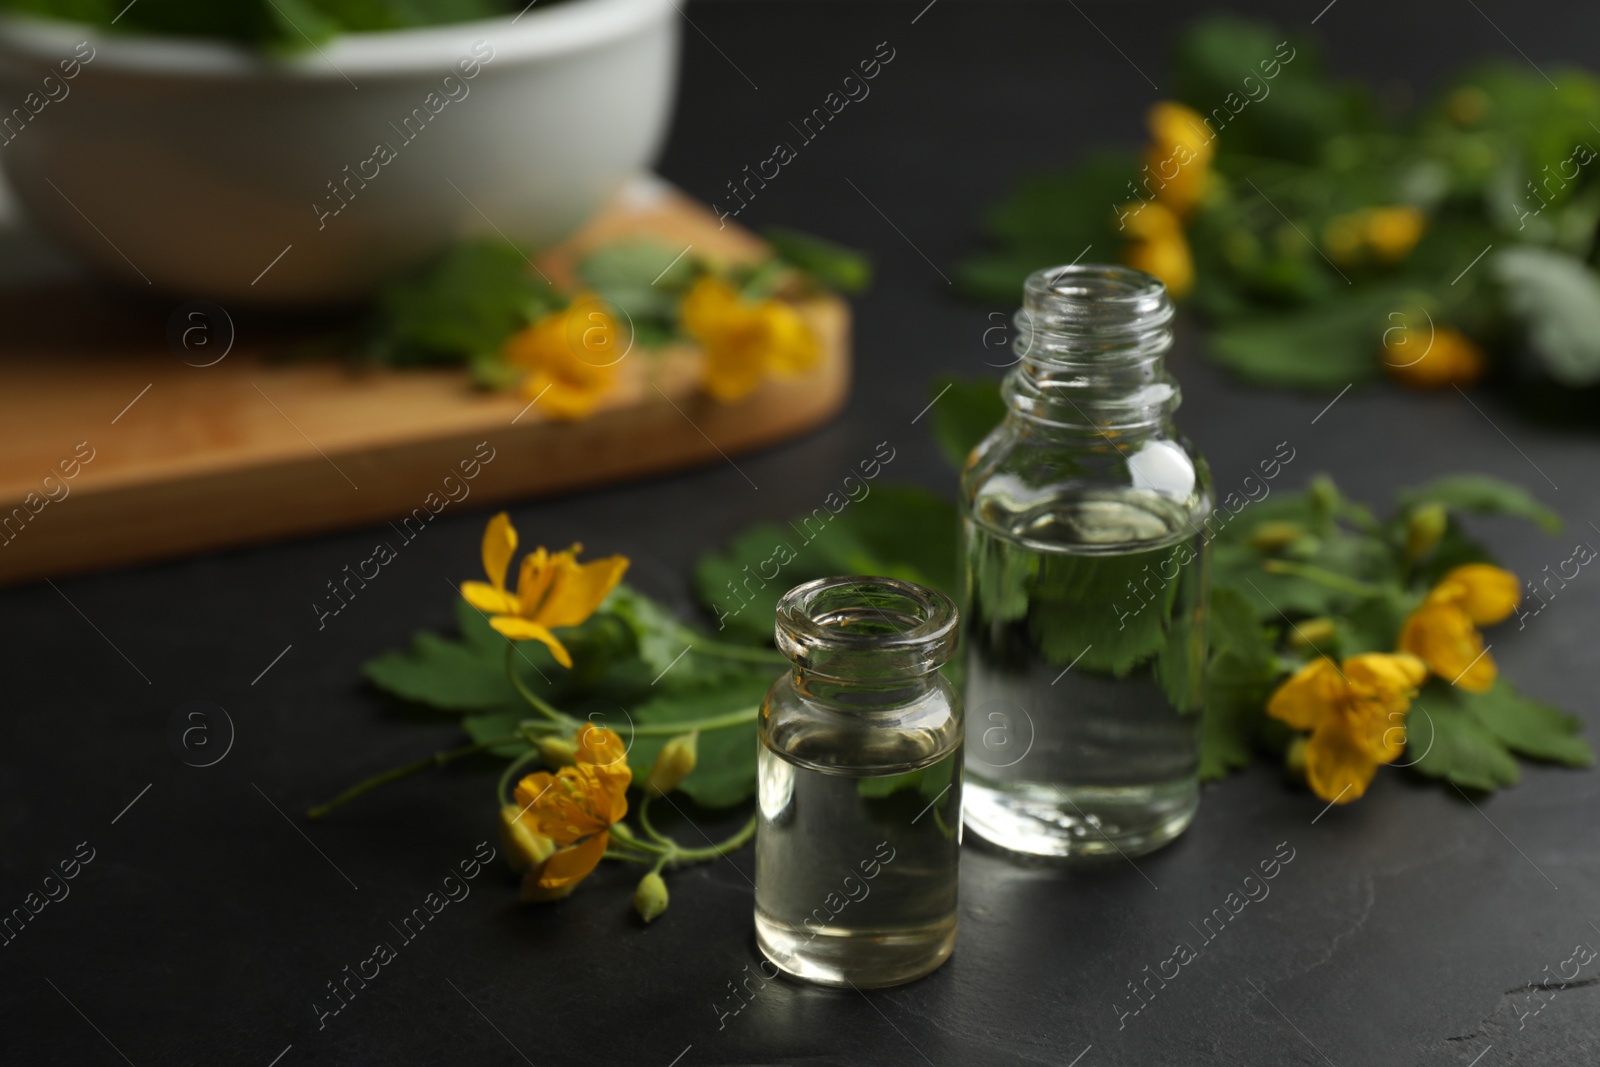 Photo of Bottles of natural celandine oil near flowers on black table